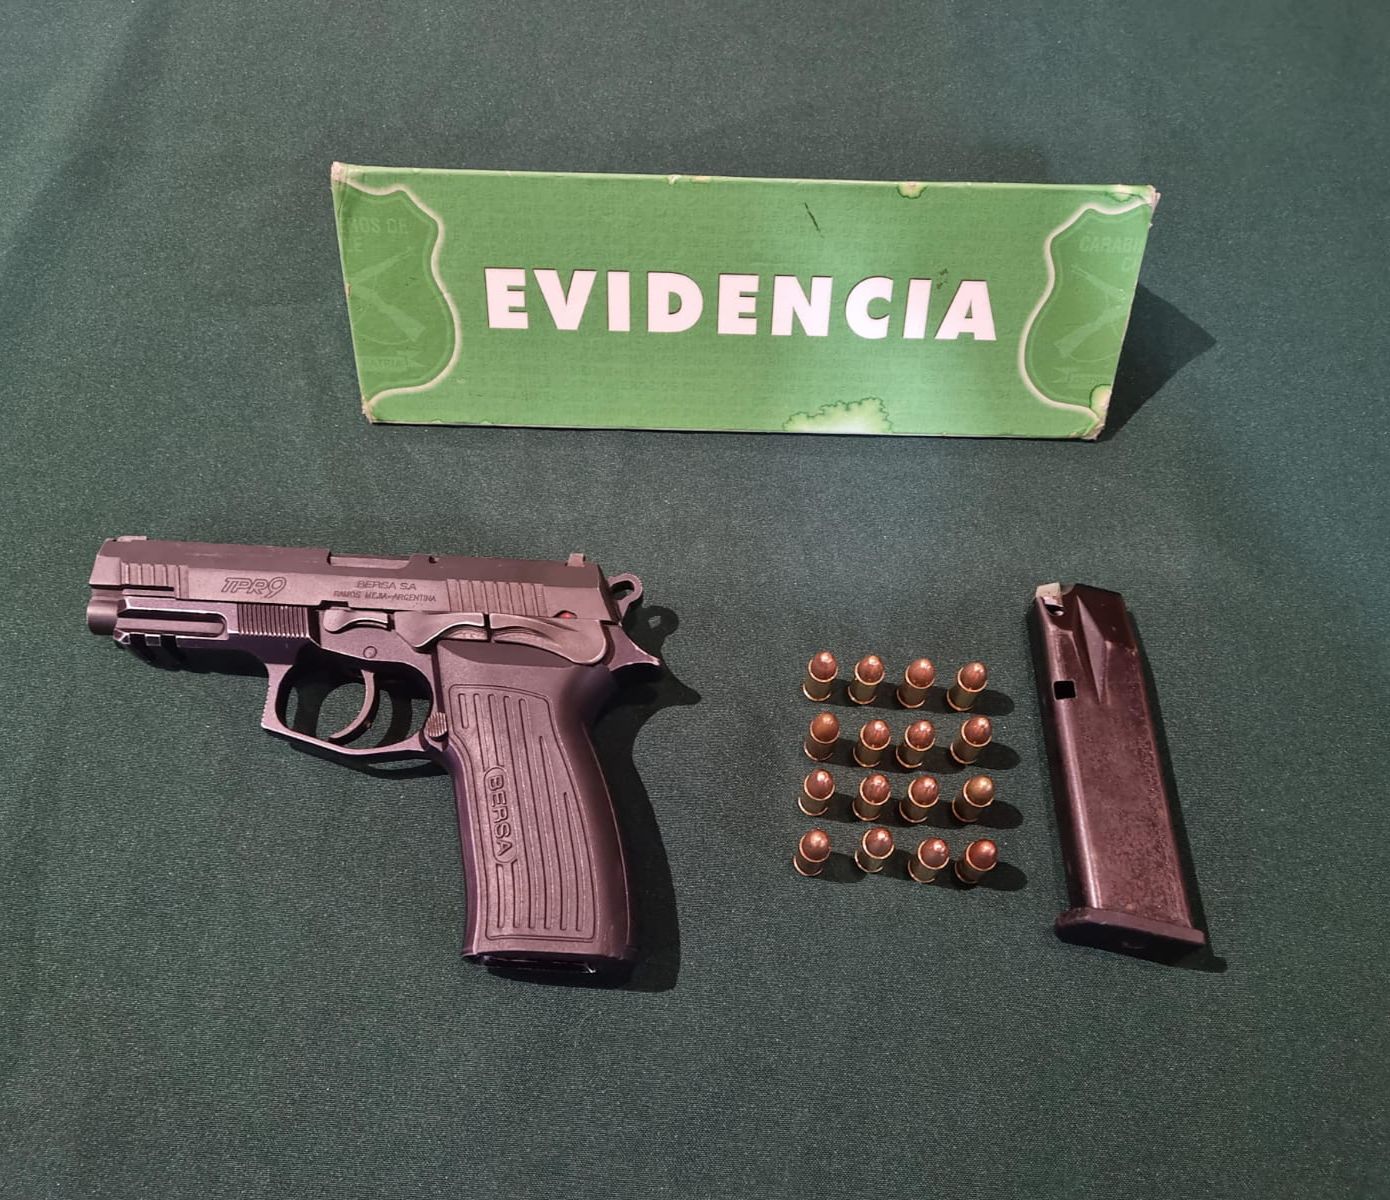 Persecución policial culminó con un detenido en Valdivia: Entre sus vestimentas llevaba un arma